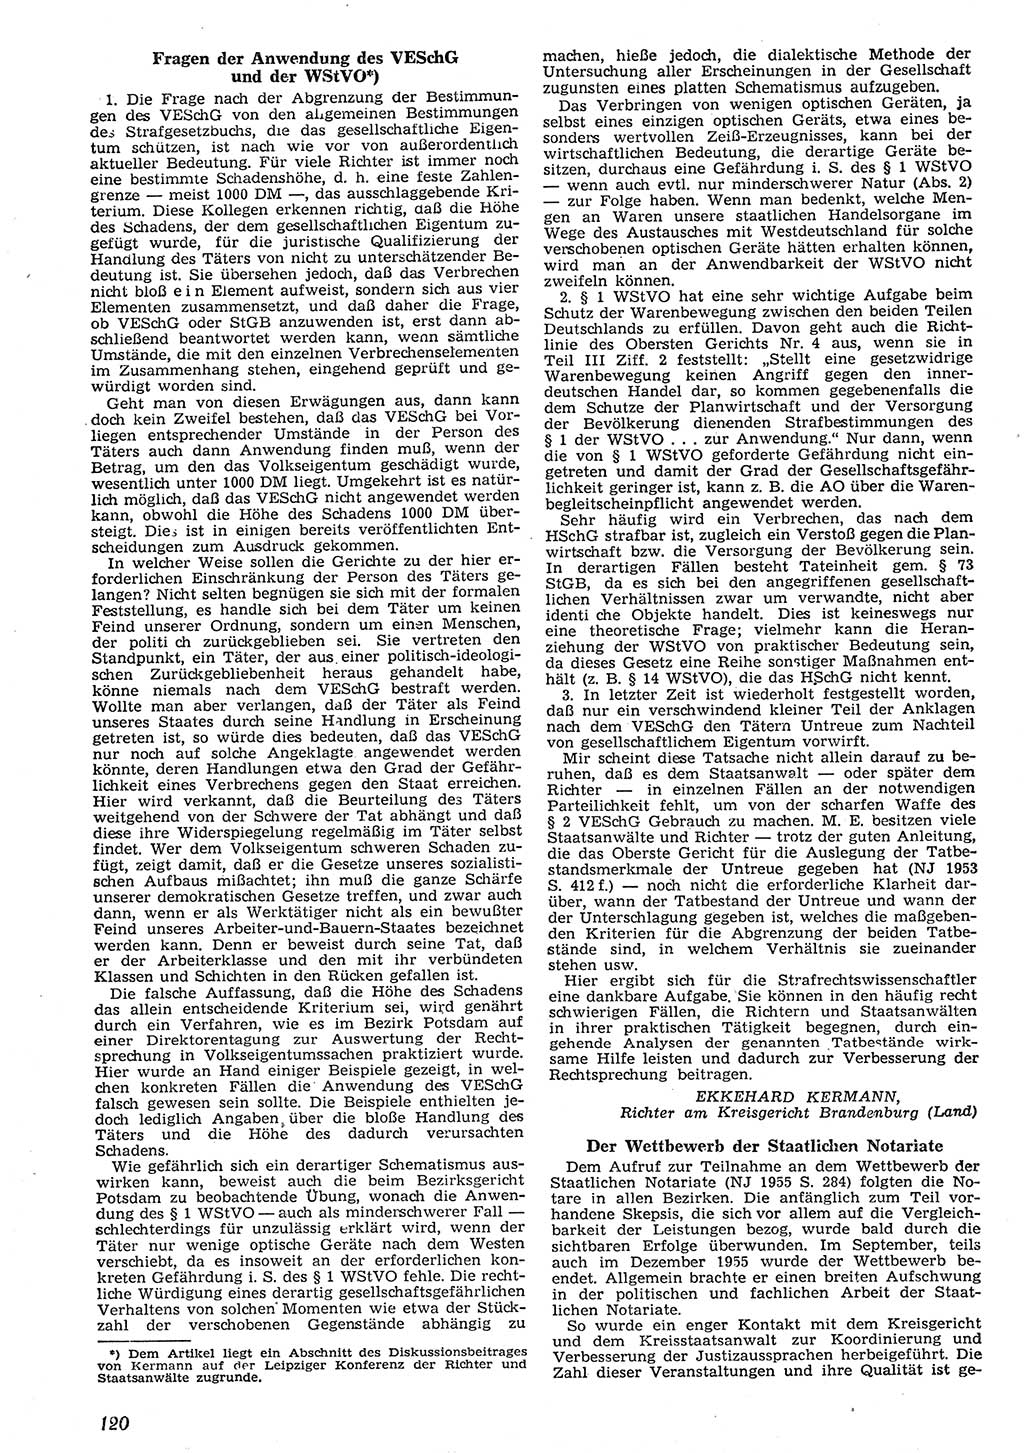 Neue Justiz (NJ), Zeitschrift für Recht und Rechtswissenschaft [Deutsche Demokratische Republik (DDR)], 10. Jahrgang 1956, Seite 120 (NJ DDR 1956, S. 120)